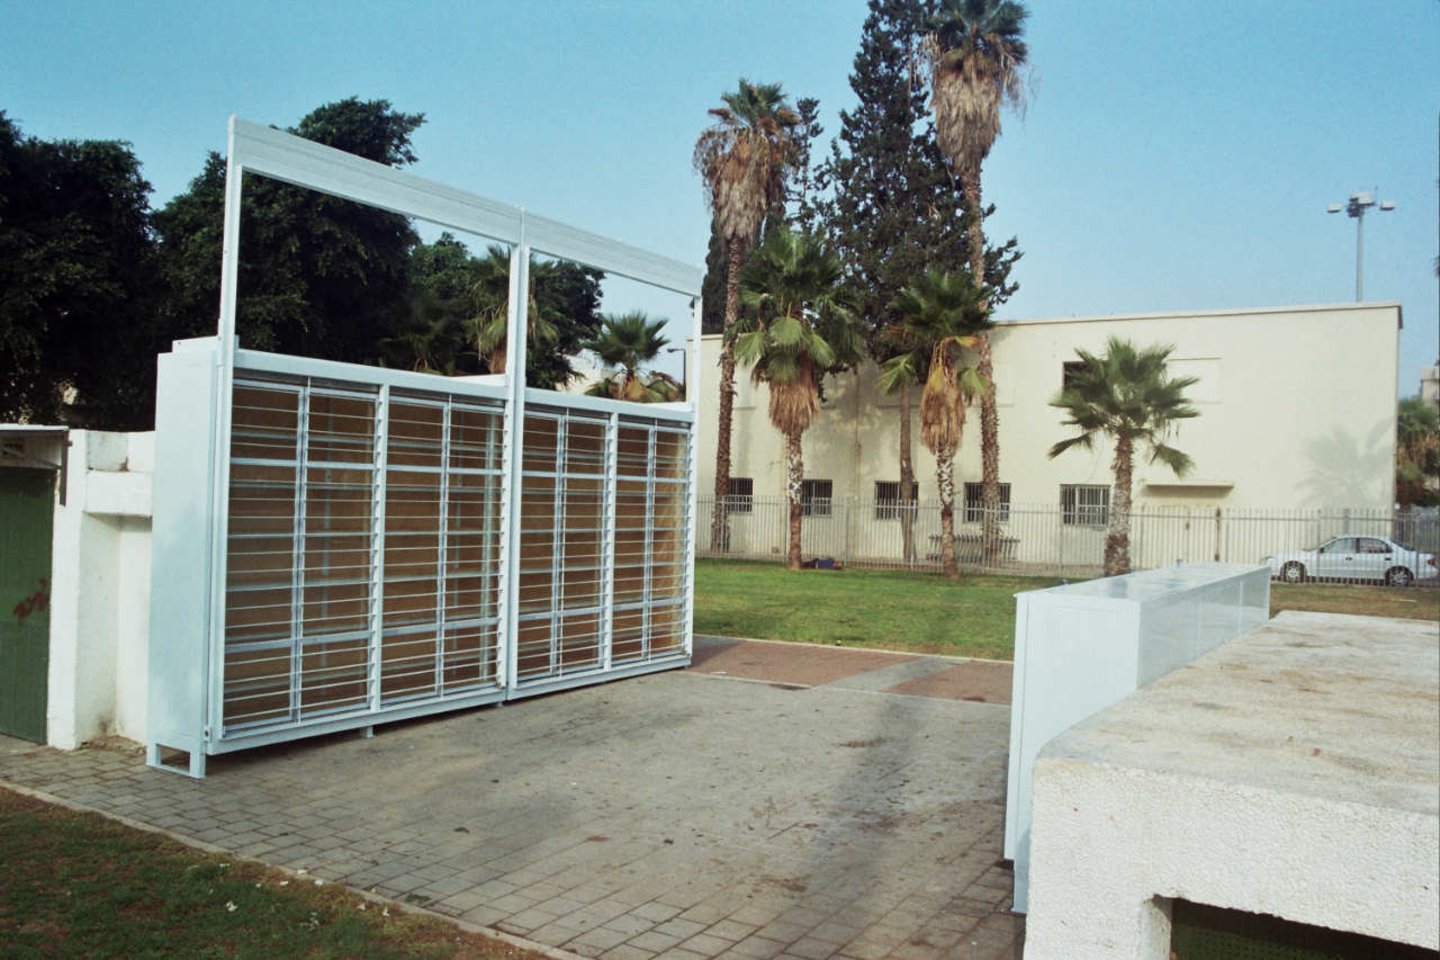 Biblioteka įkurta kaip miesto bendruomenės projektas, veikia Izraelio Tel Avivo viešajame parke, kur savaitgaliais renkasi darbuotojai migrantai.<br>Y. Meiri / archdaily.com nuotr.